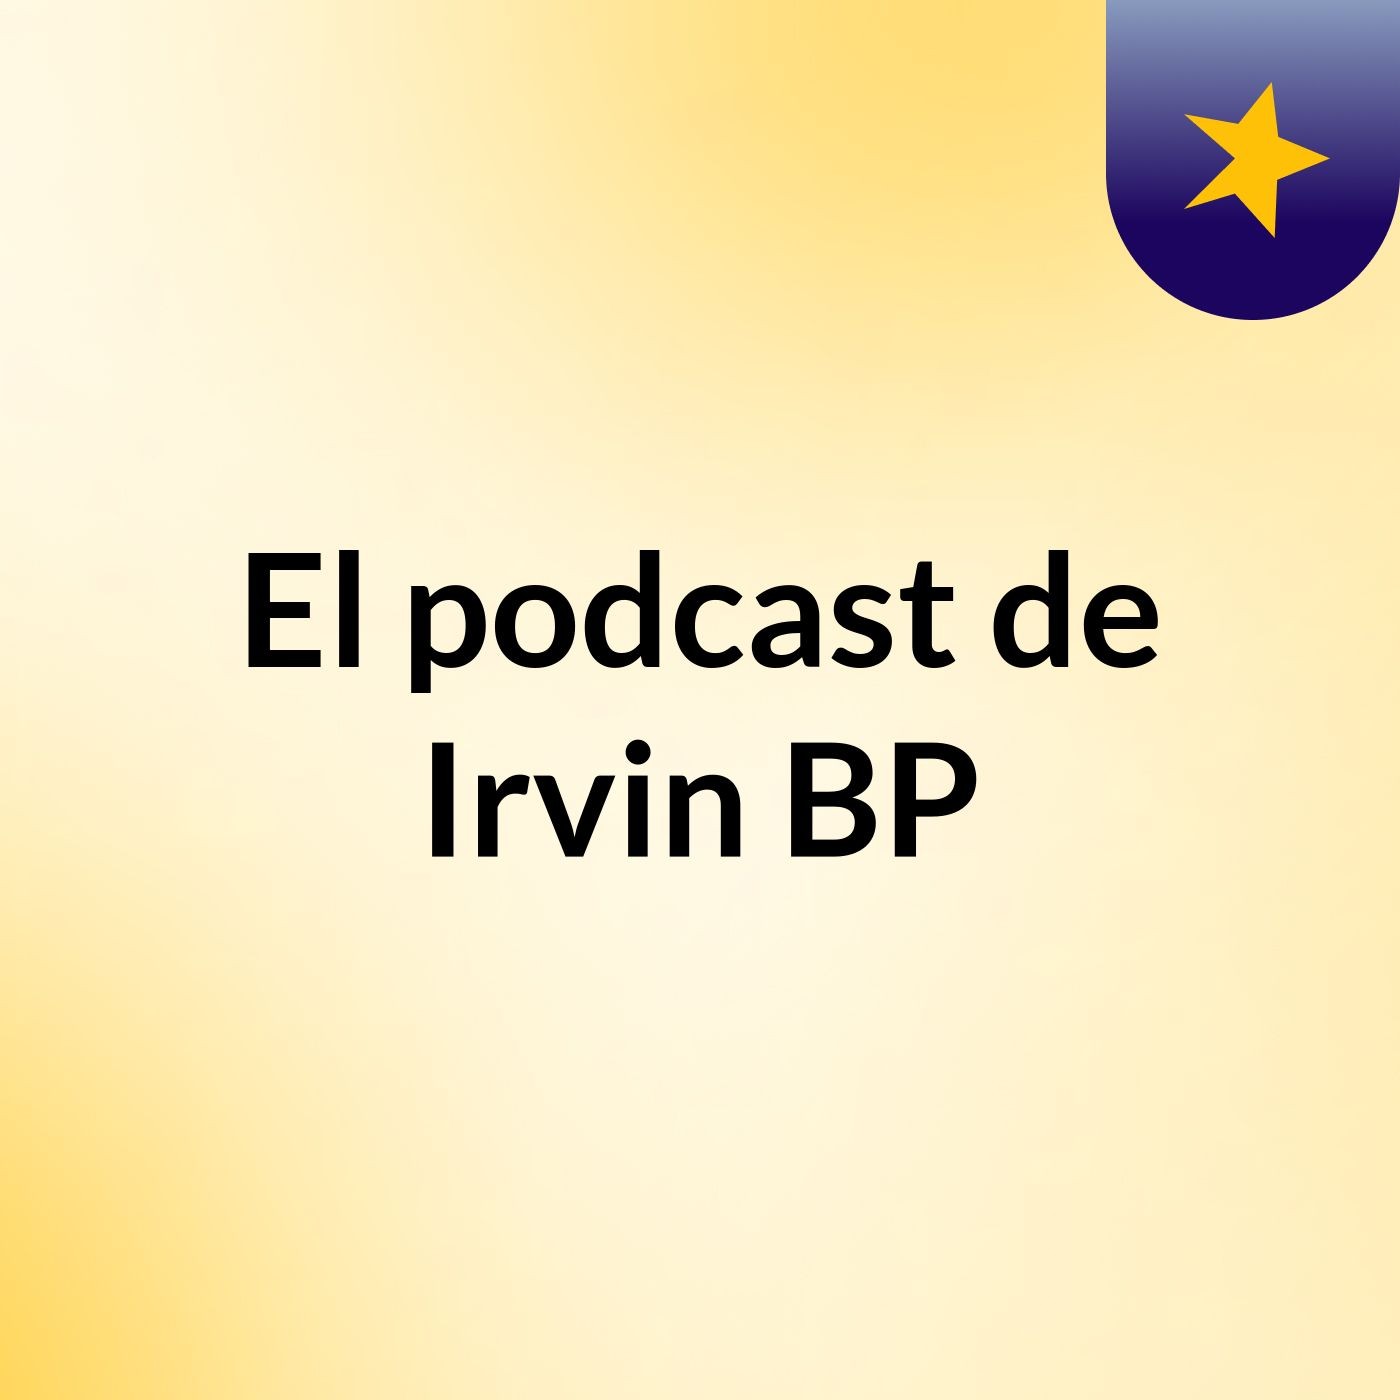 El podcast de Irvin BP